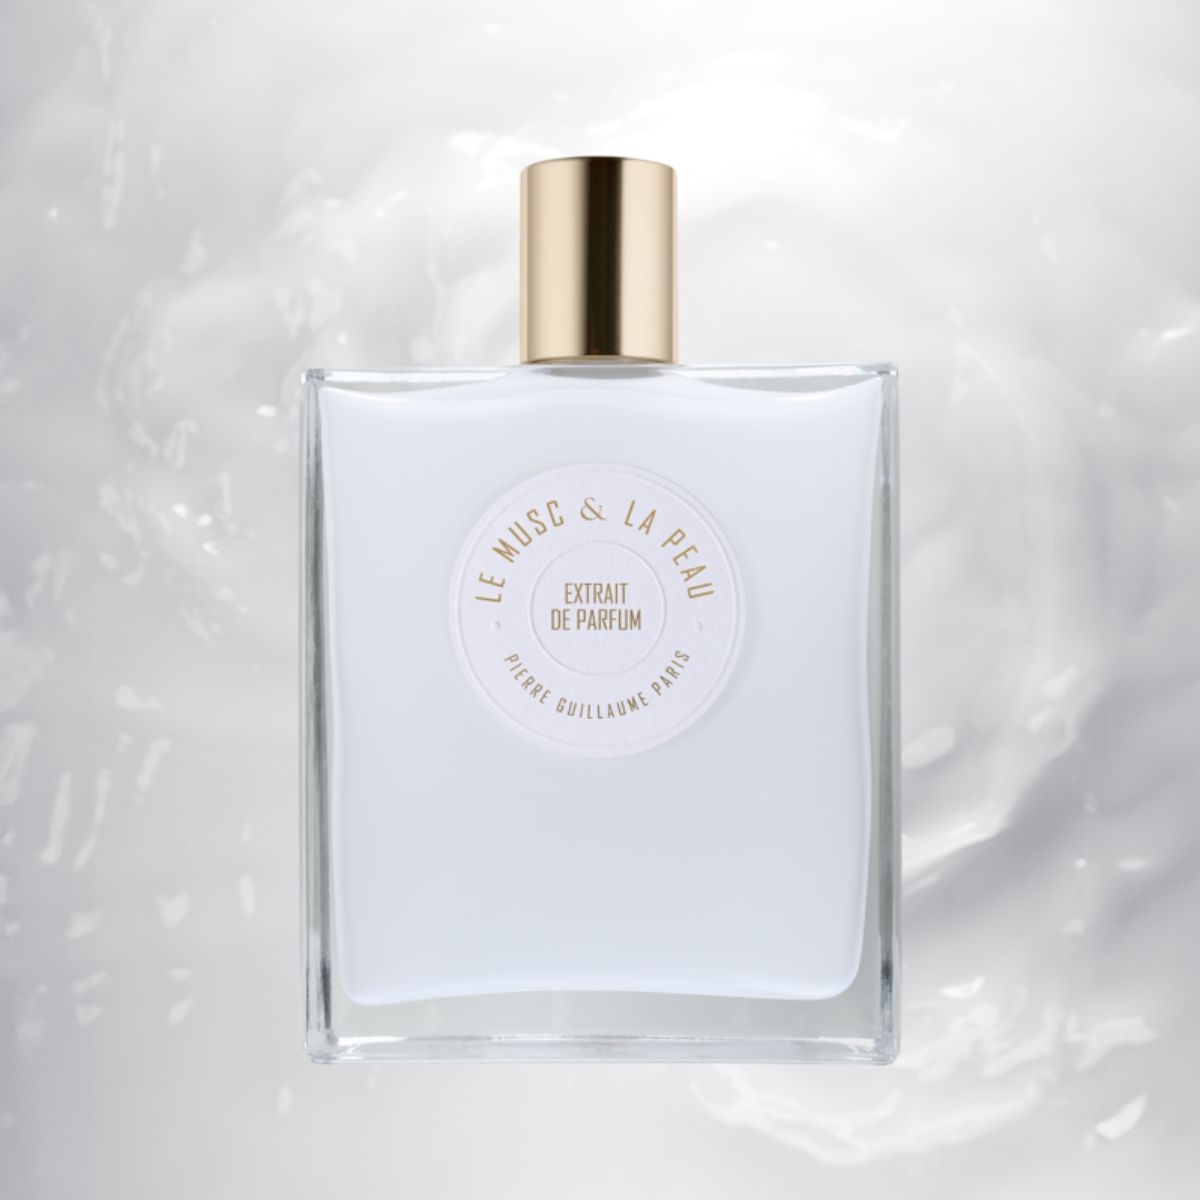 Pierre Guillaume Paris - Le Musc & La Peau Extrait de Parfum